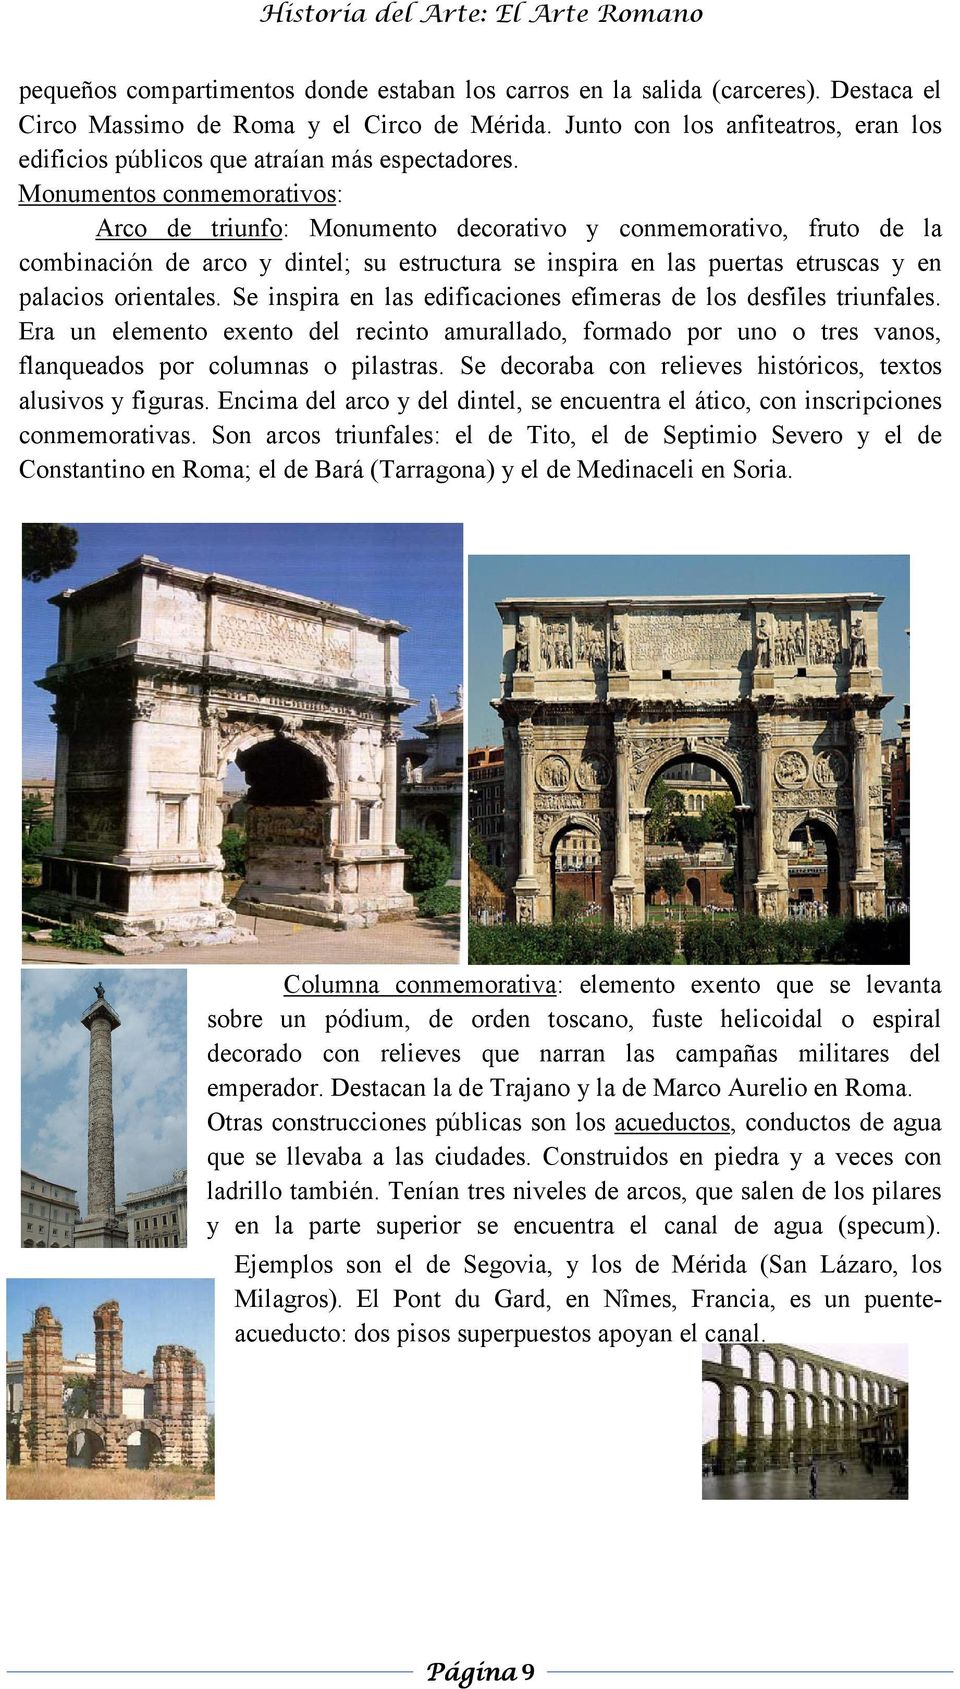 Monumentos conmemorativos: Arco de triunfo: Monumento decorativo y conmemorativo, fruto de la combinación de arco y dintel; su estructura se inspira en las puertas etruscas y en palacios orientales.